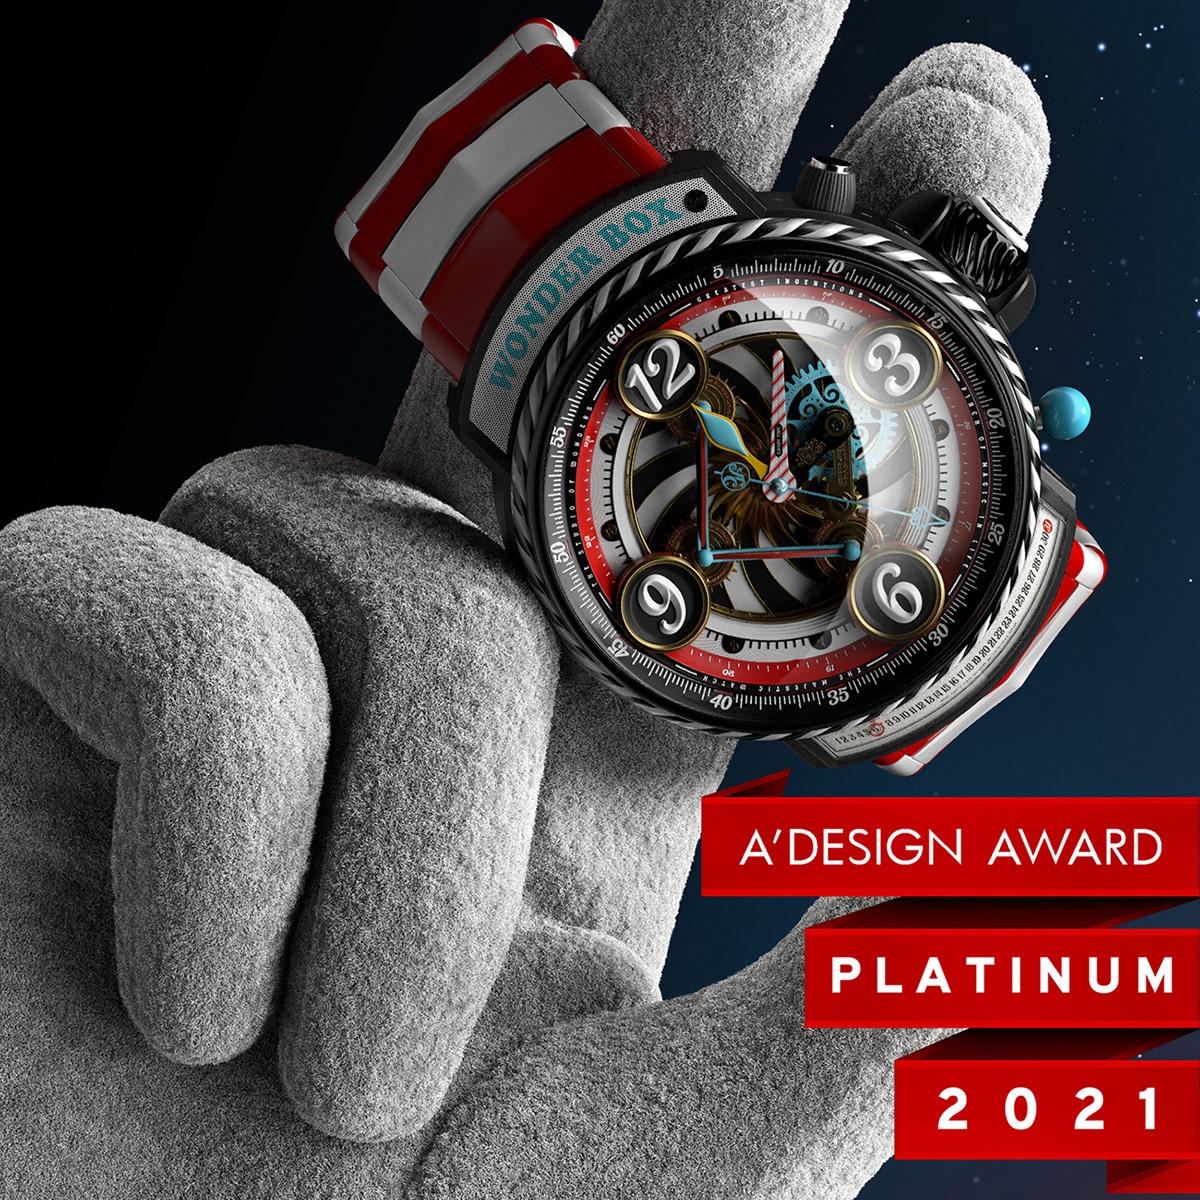 3D adesign andre award caputo CGI design Majestic Platinum watch